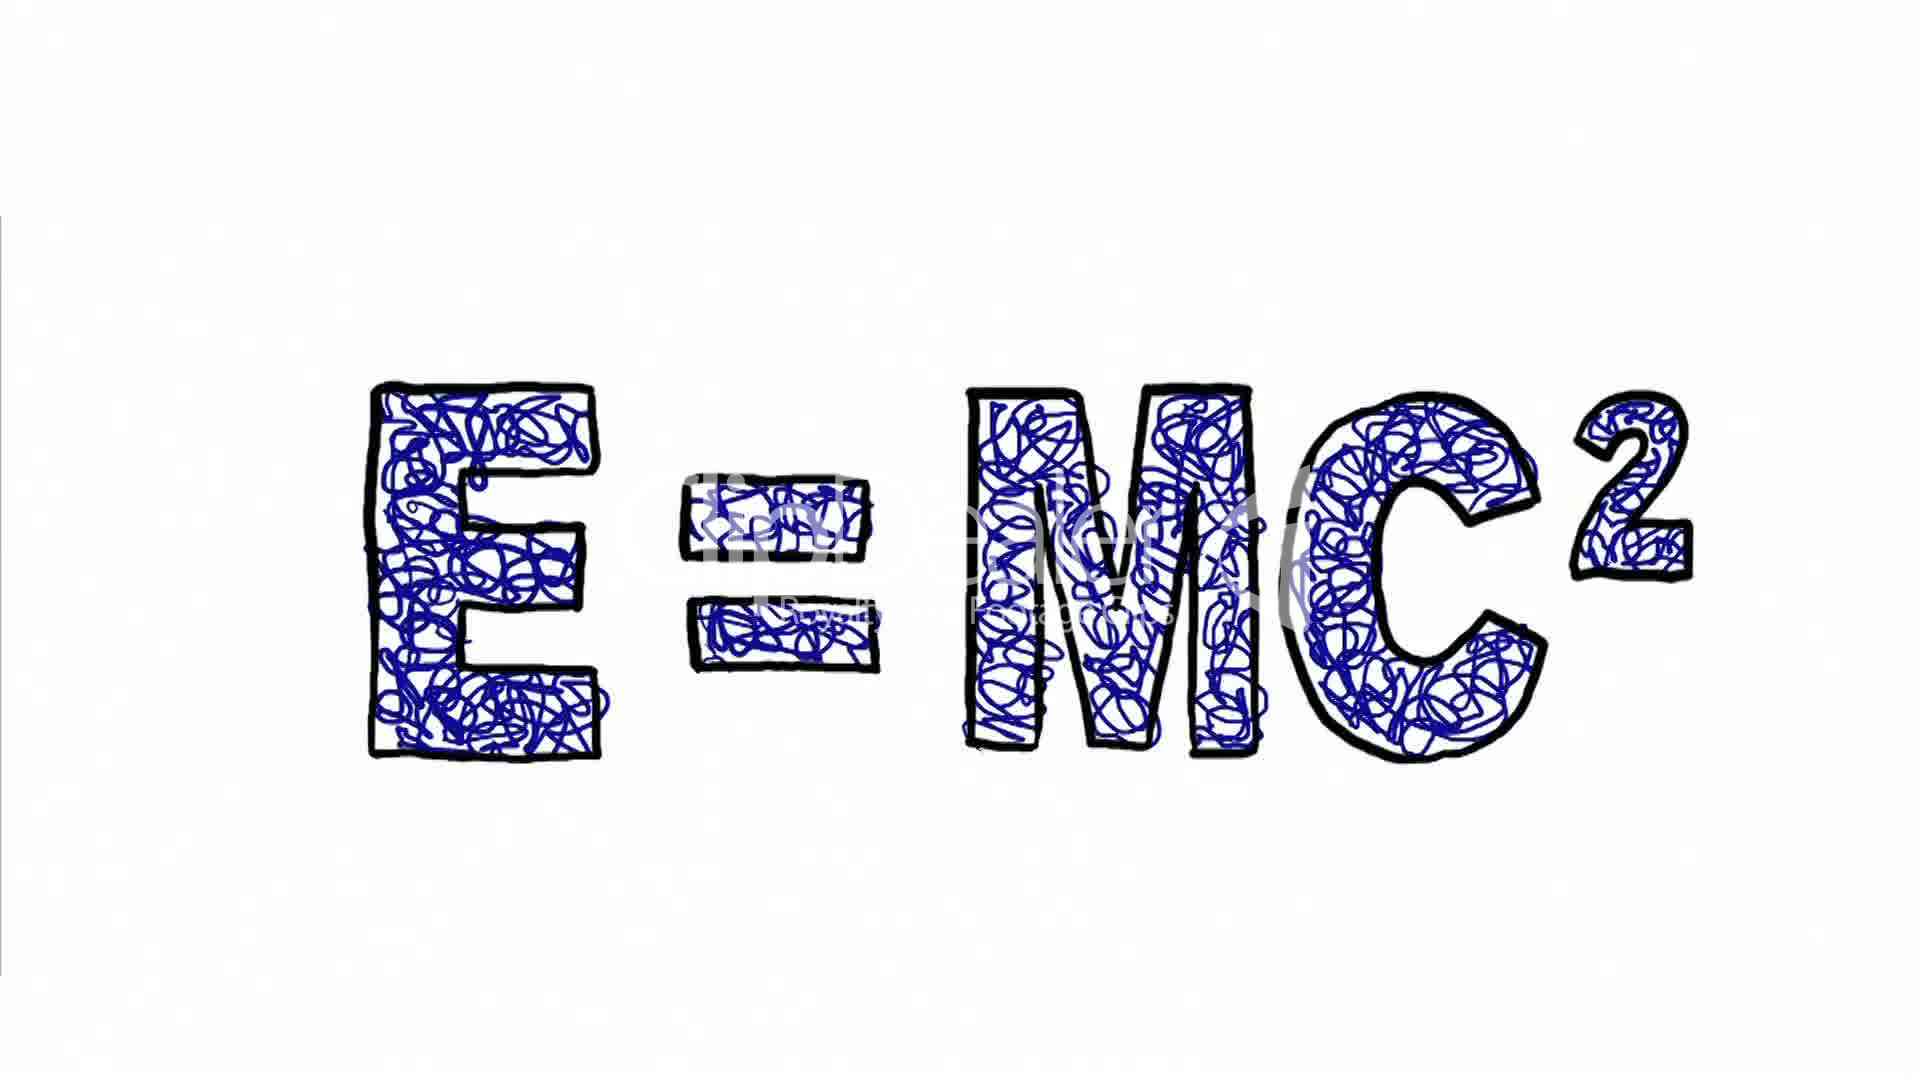 EMC Wallpaper. EMC Dell Wallpaper, EMC